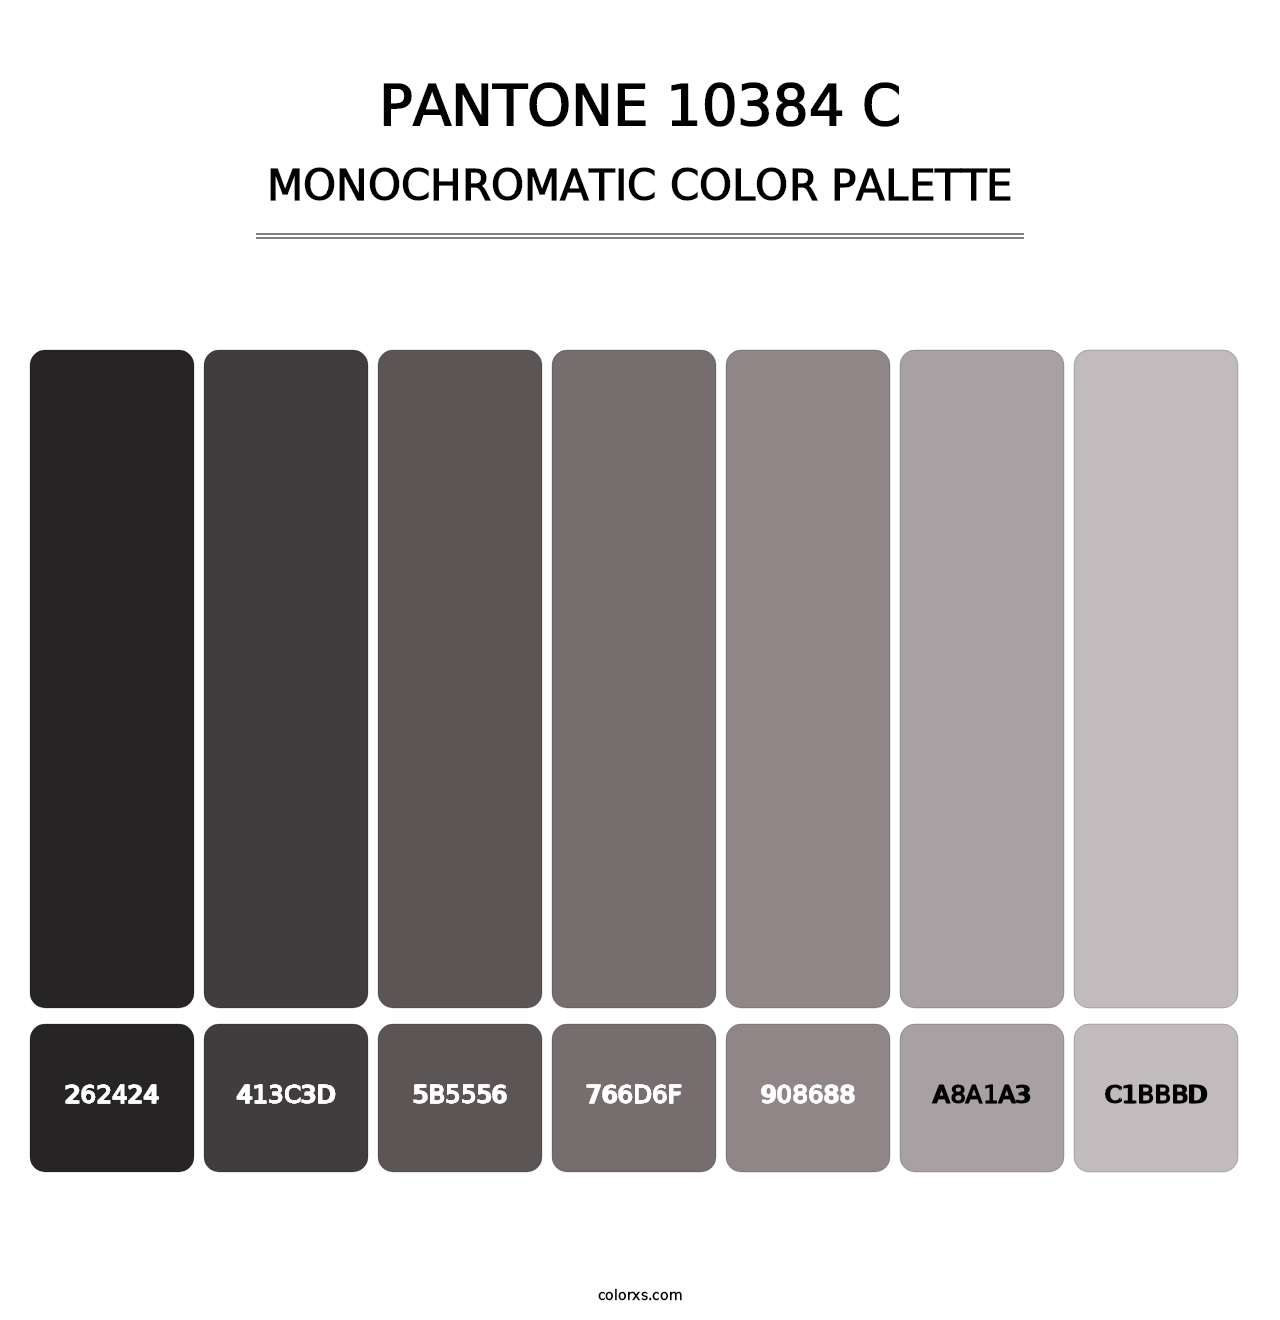 PANTONE 10384 C - Monochromatic Color Palette